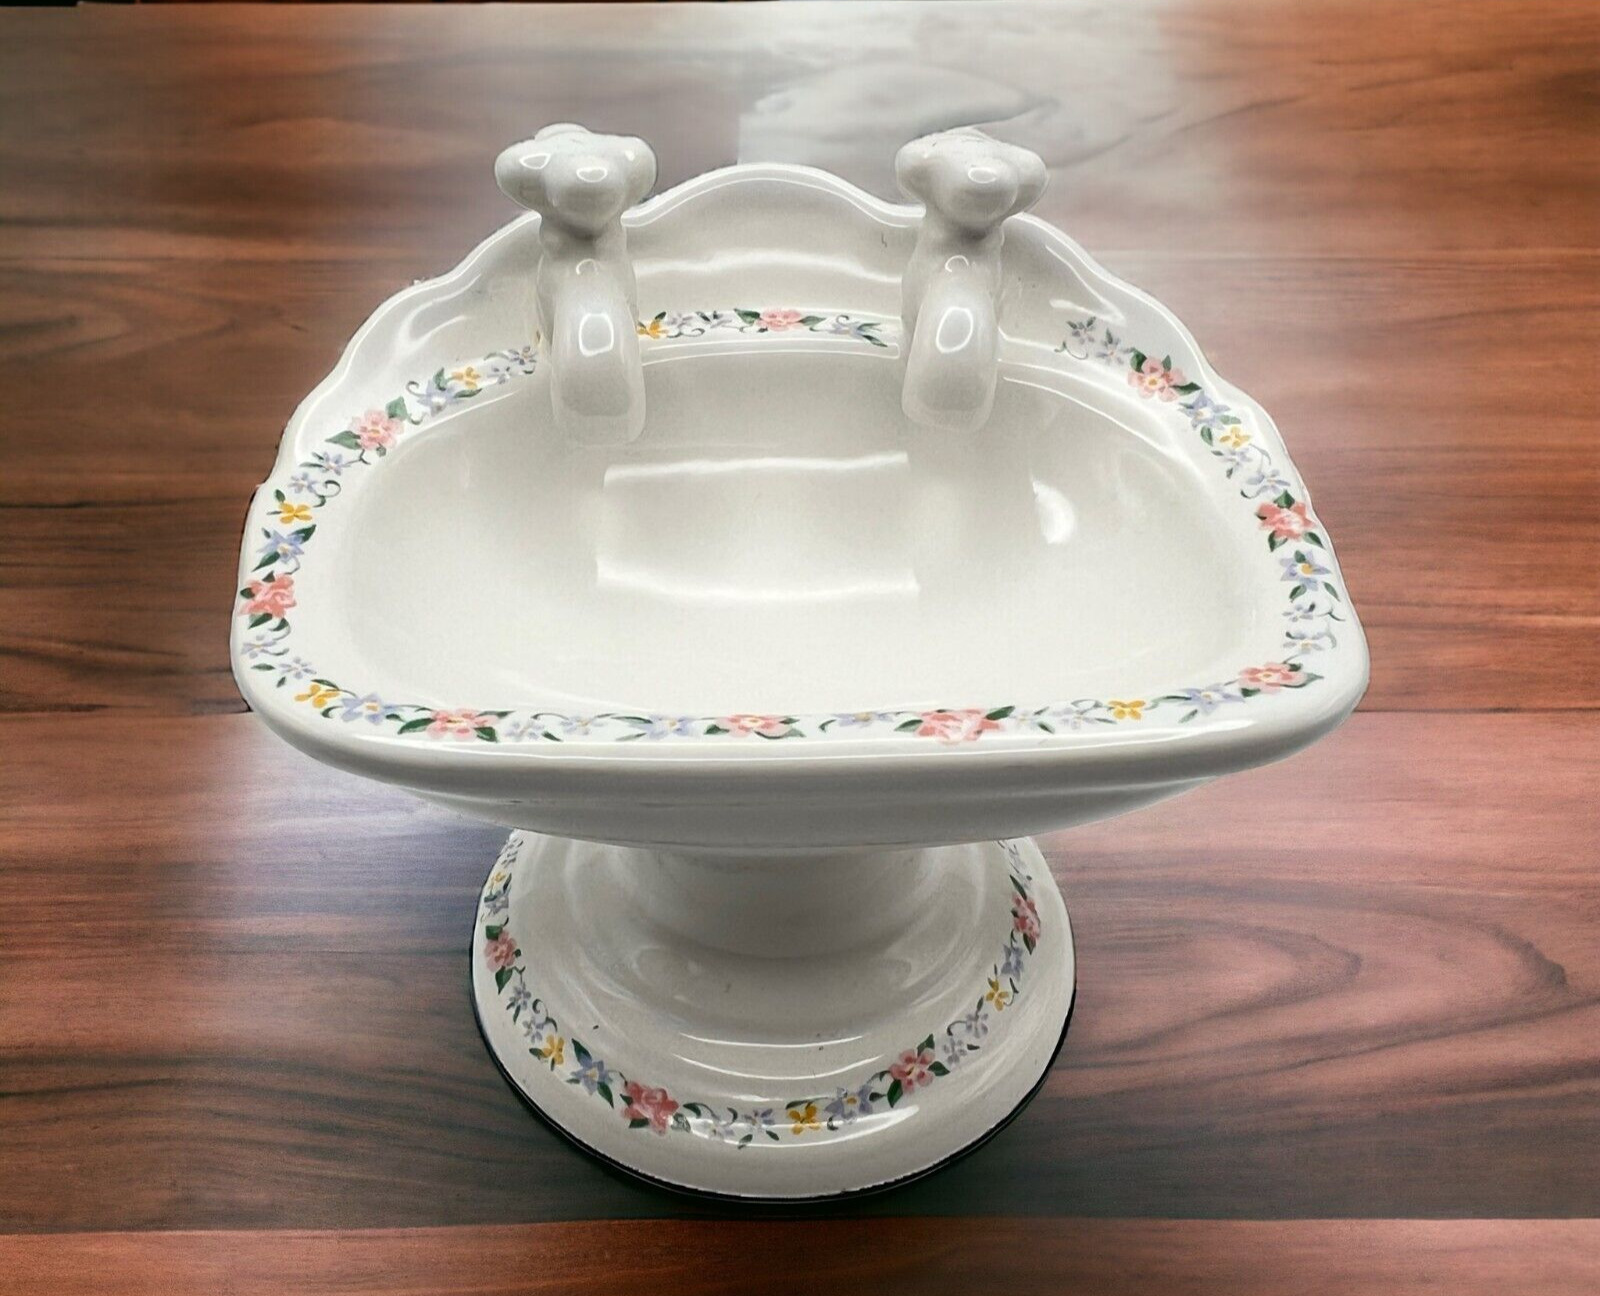 Ceramic Soap Dish Vintage Pedestal Sink Floral Upper Canada Collection Bathroom